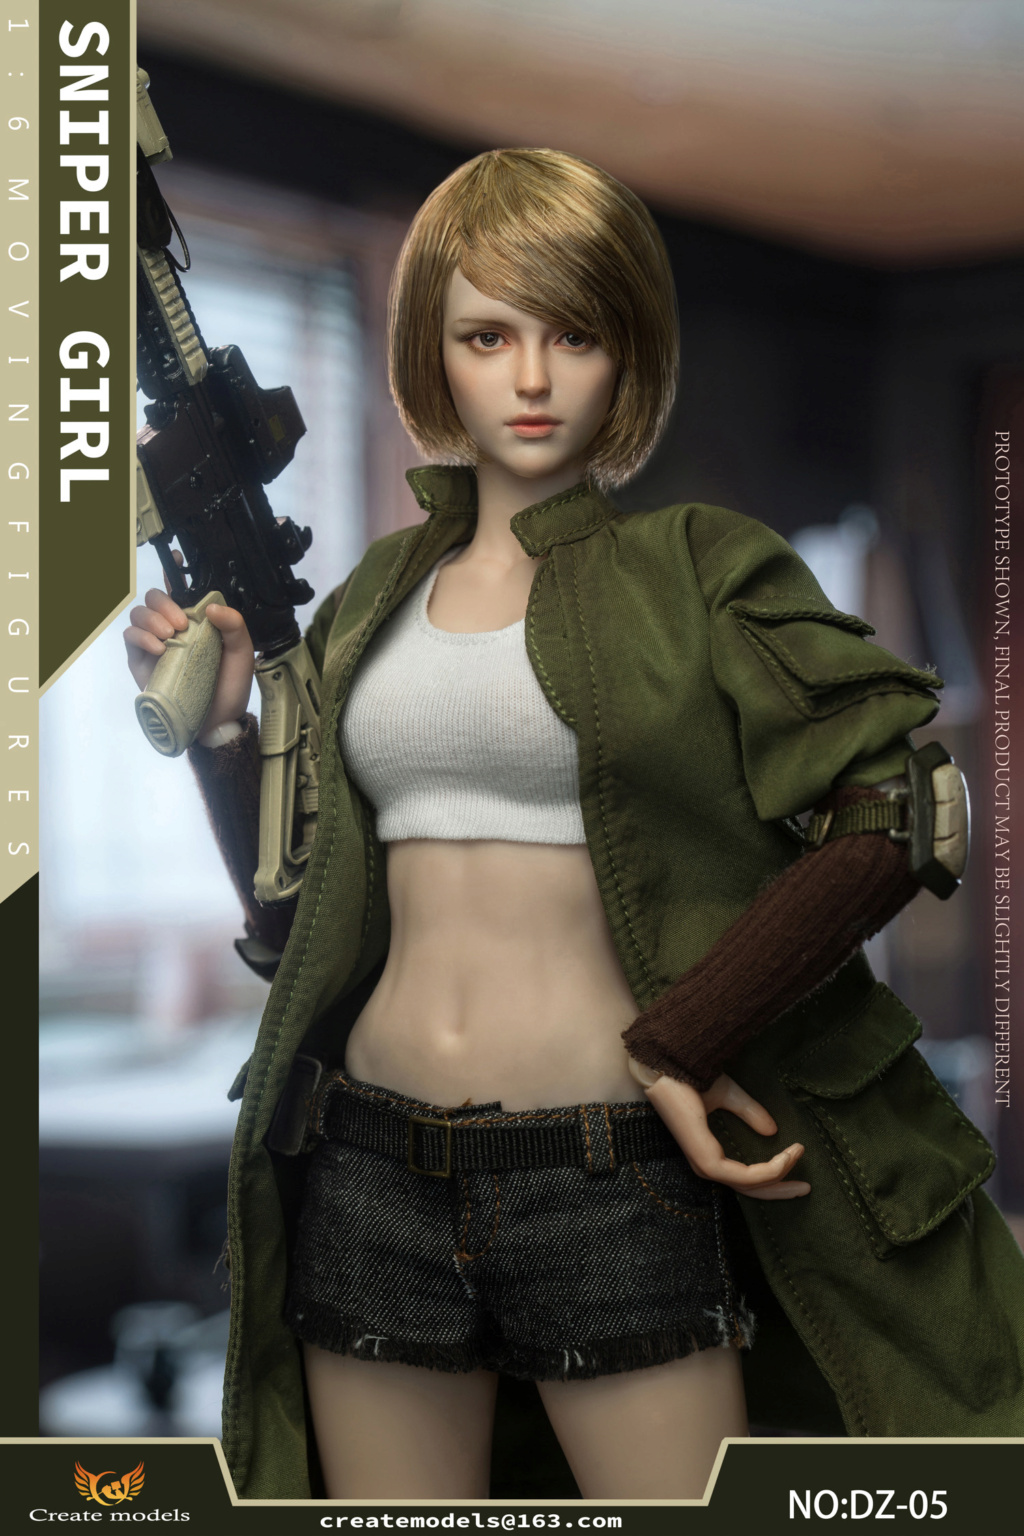 Createmodels - NEW PRODUCT: Createmodels: 1/6 Sniper Girl-Songbird/Lan Action Figures #DZ-05/DZ-06 18512110